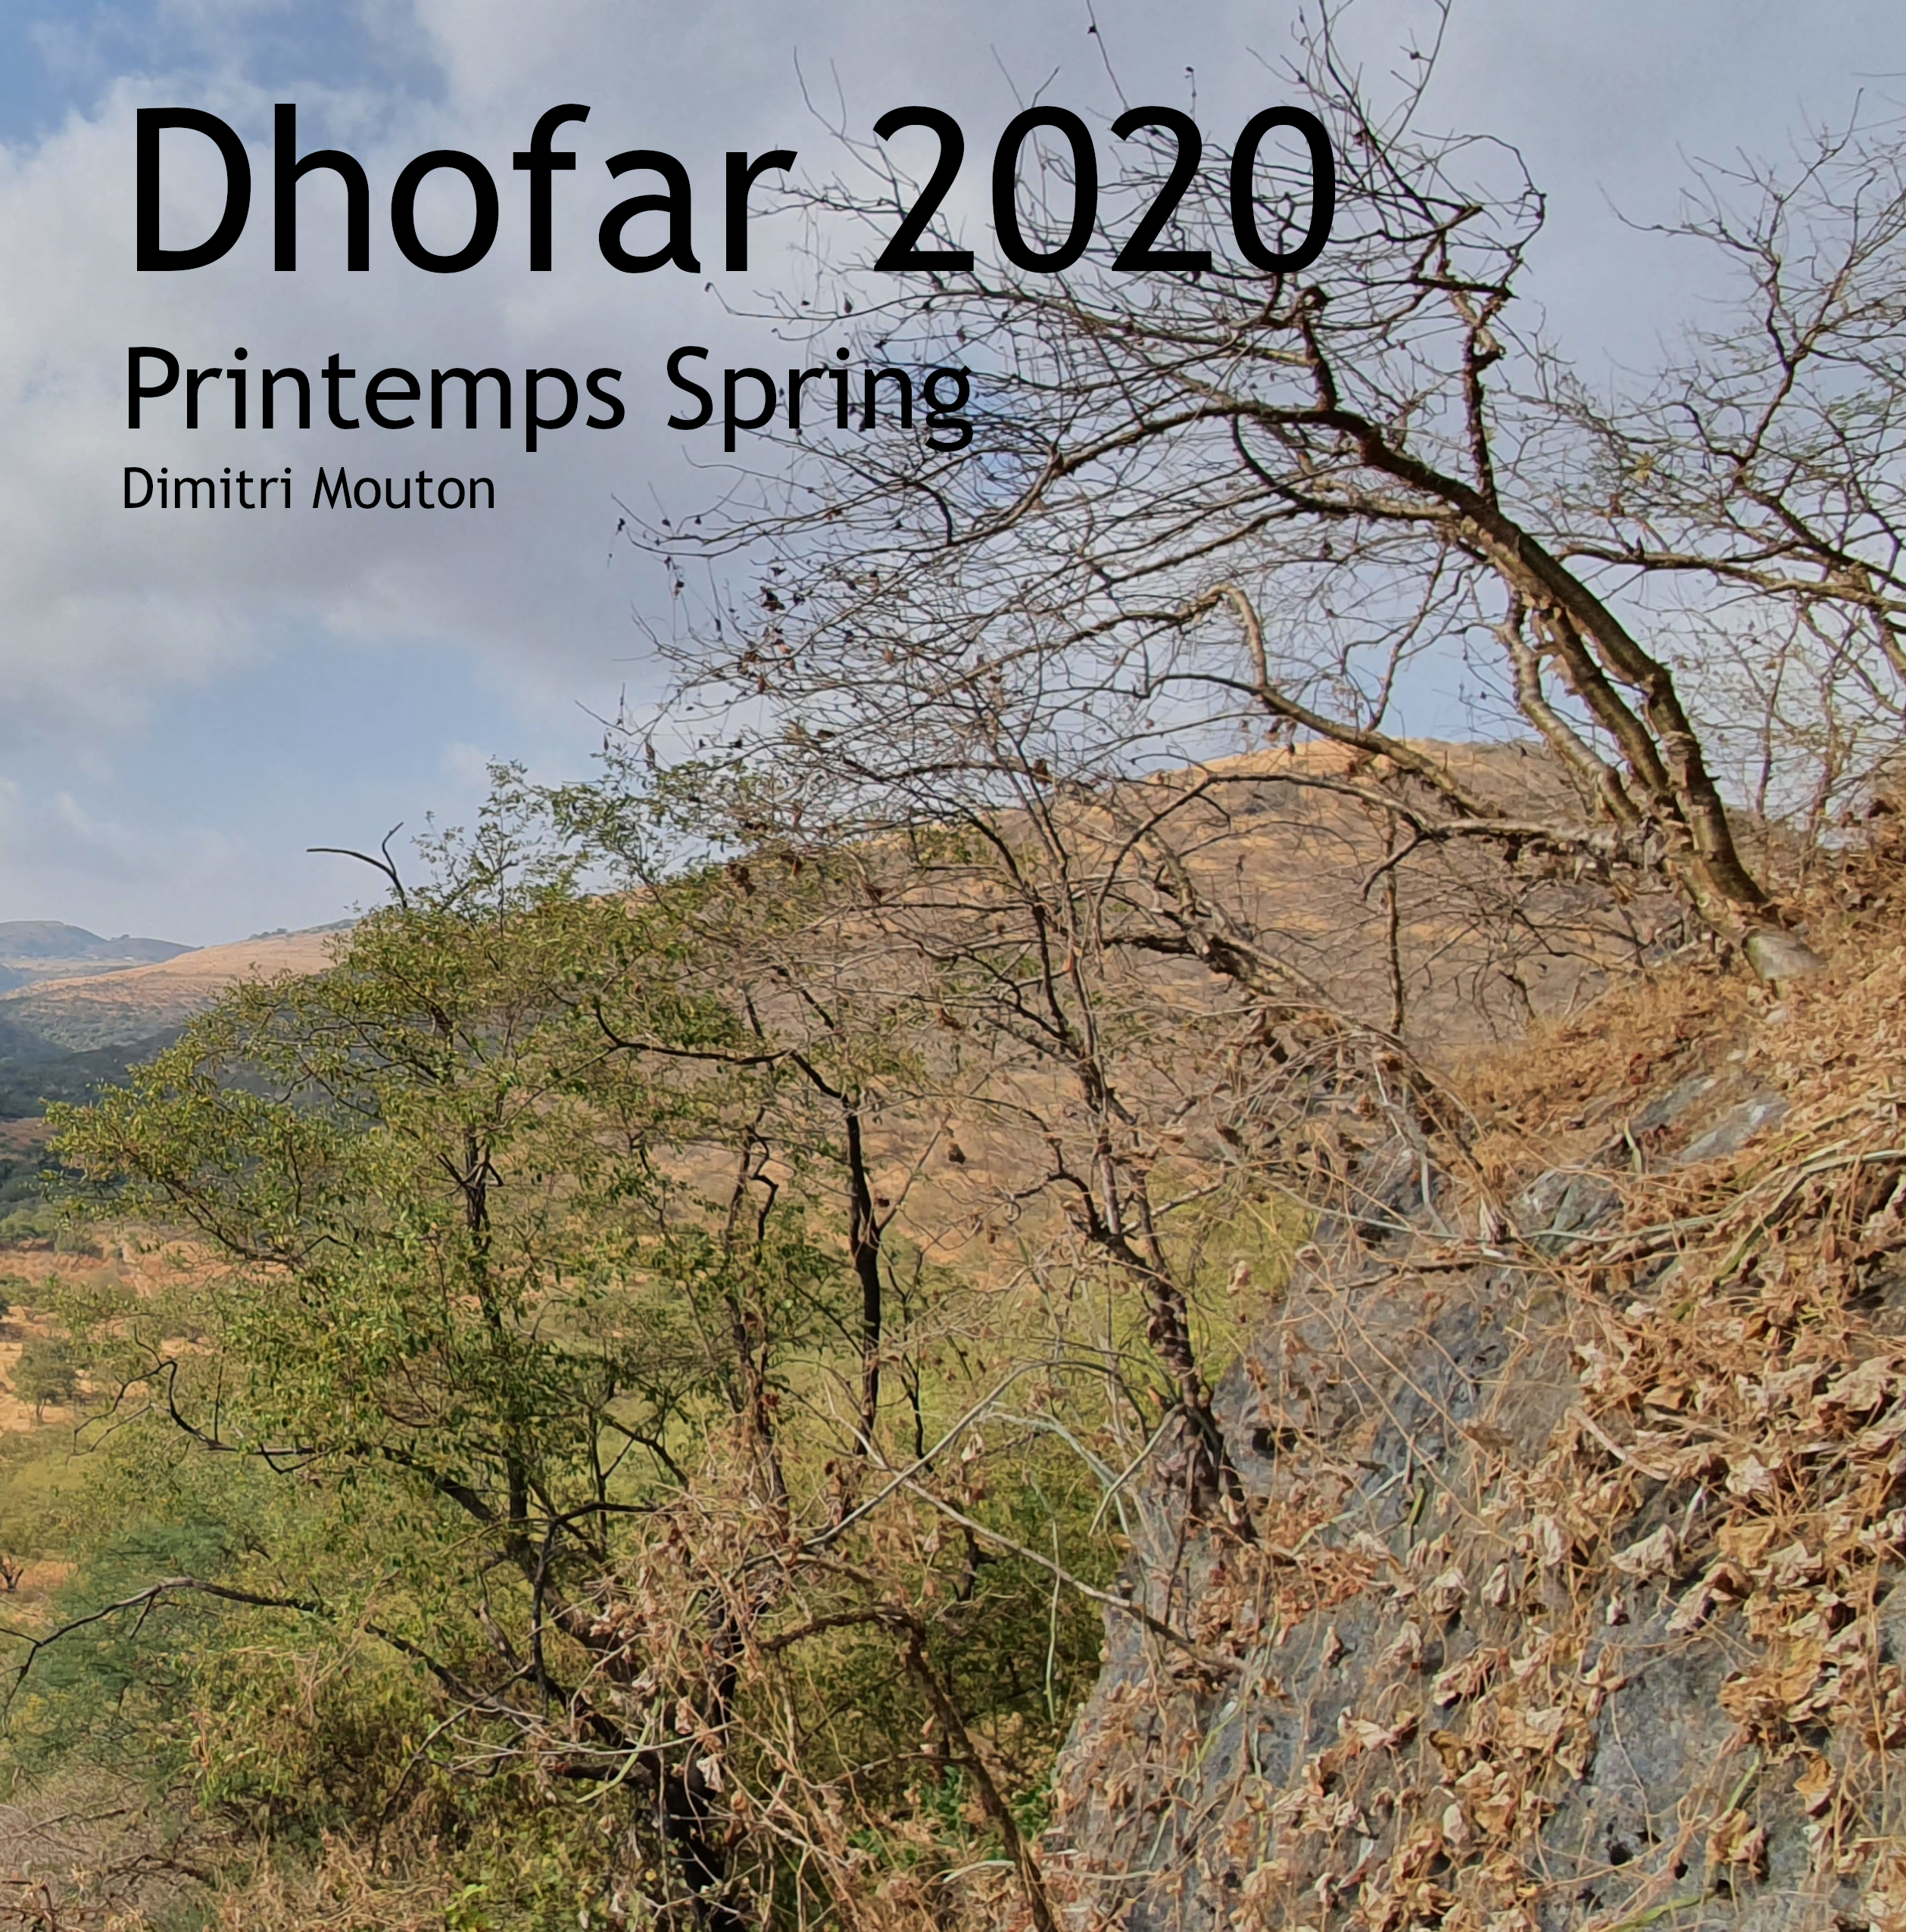 Dhofar printemps 2020